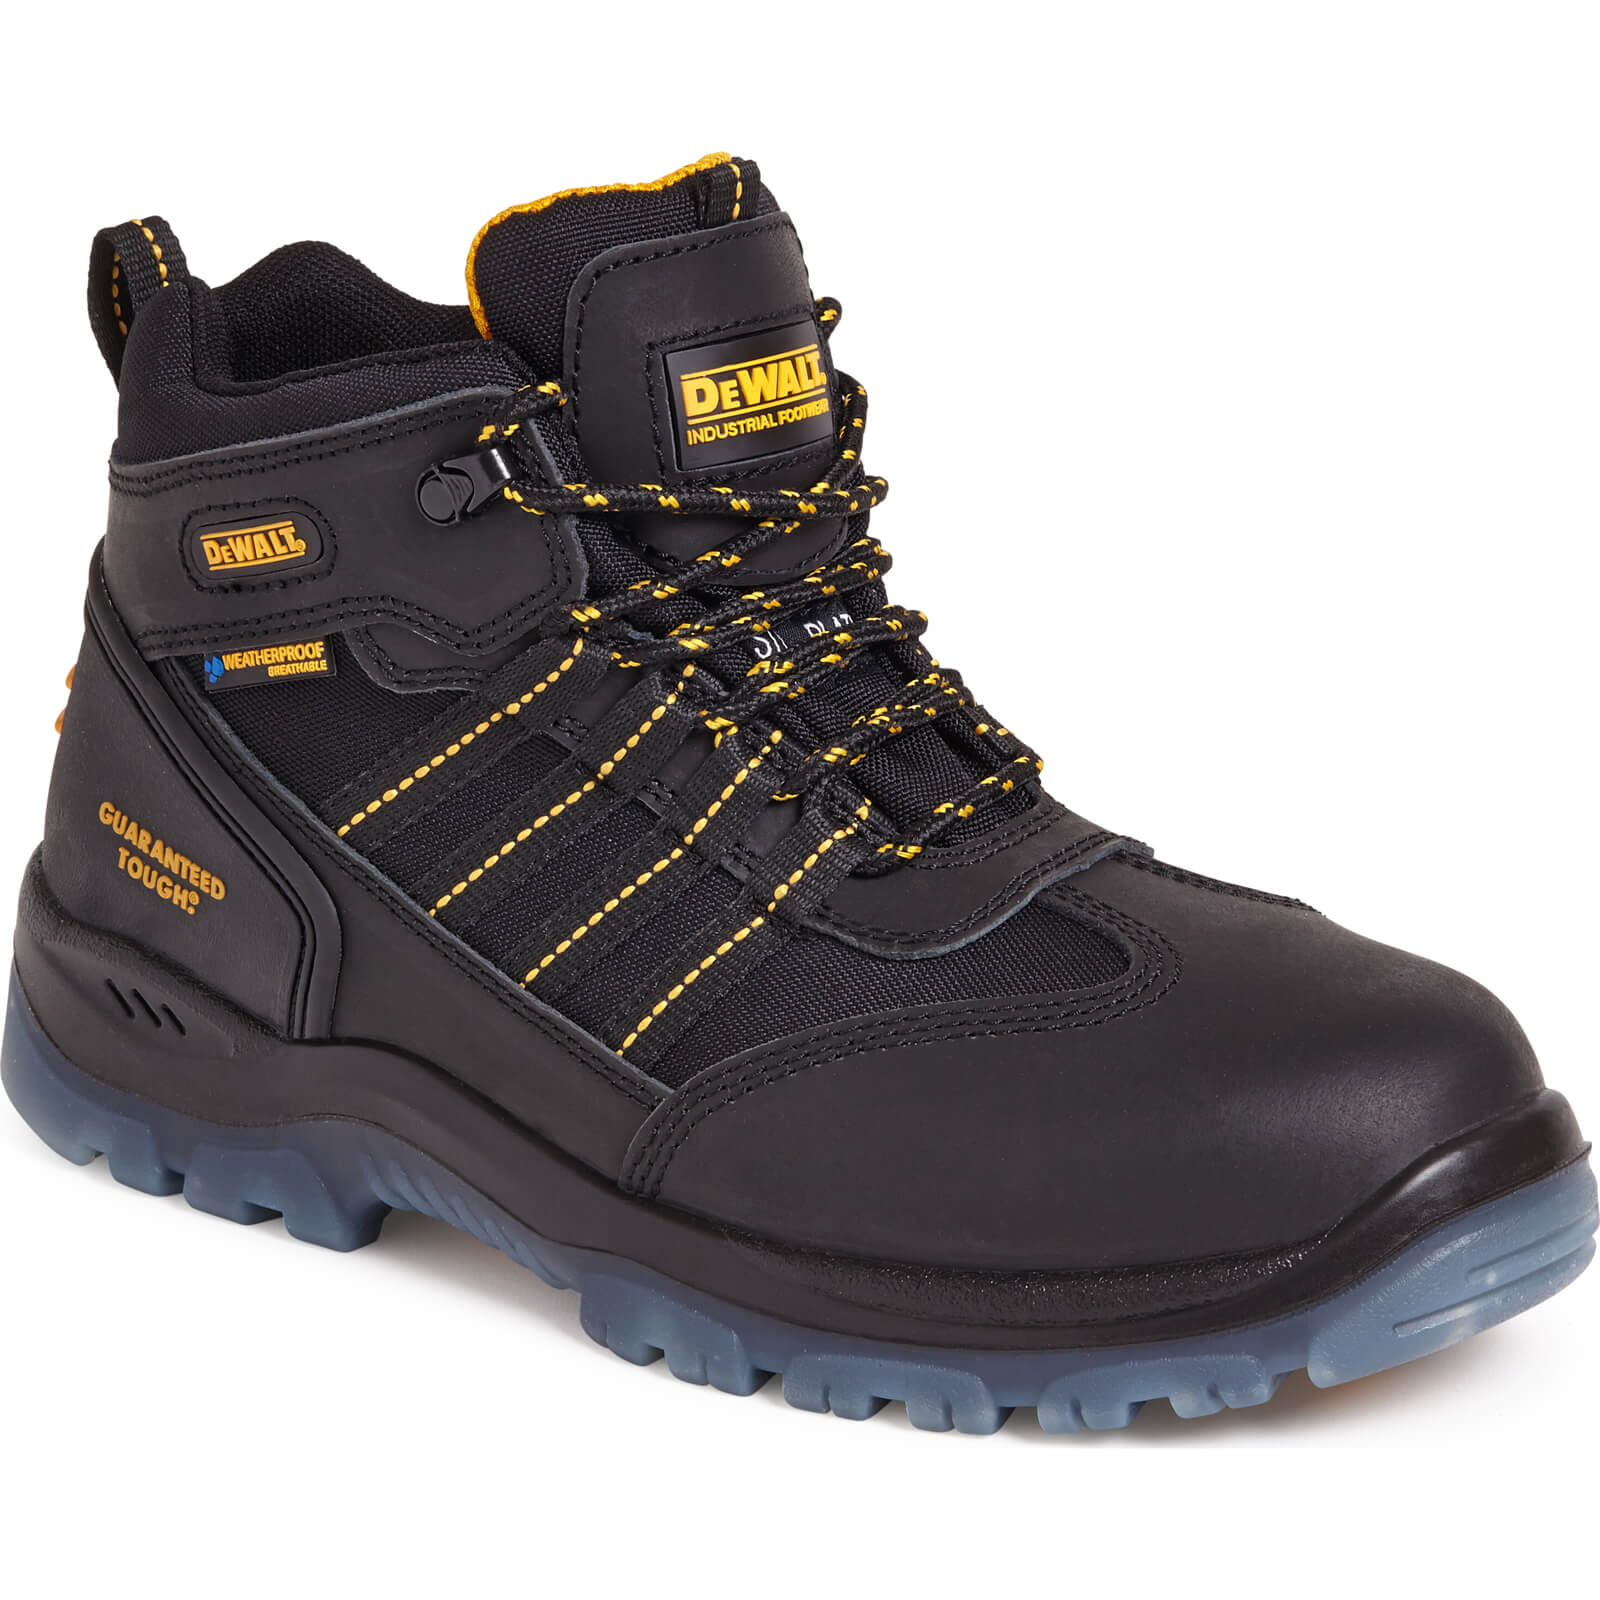 Photos - Safety Equipment DeWALT Nickel Mens Waterproof Safety Hiker Boots Black Size 8 505516003168 